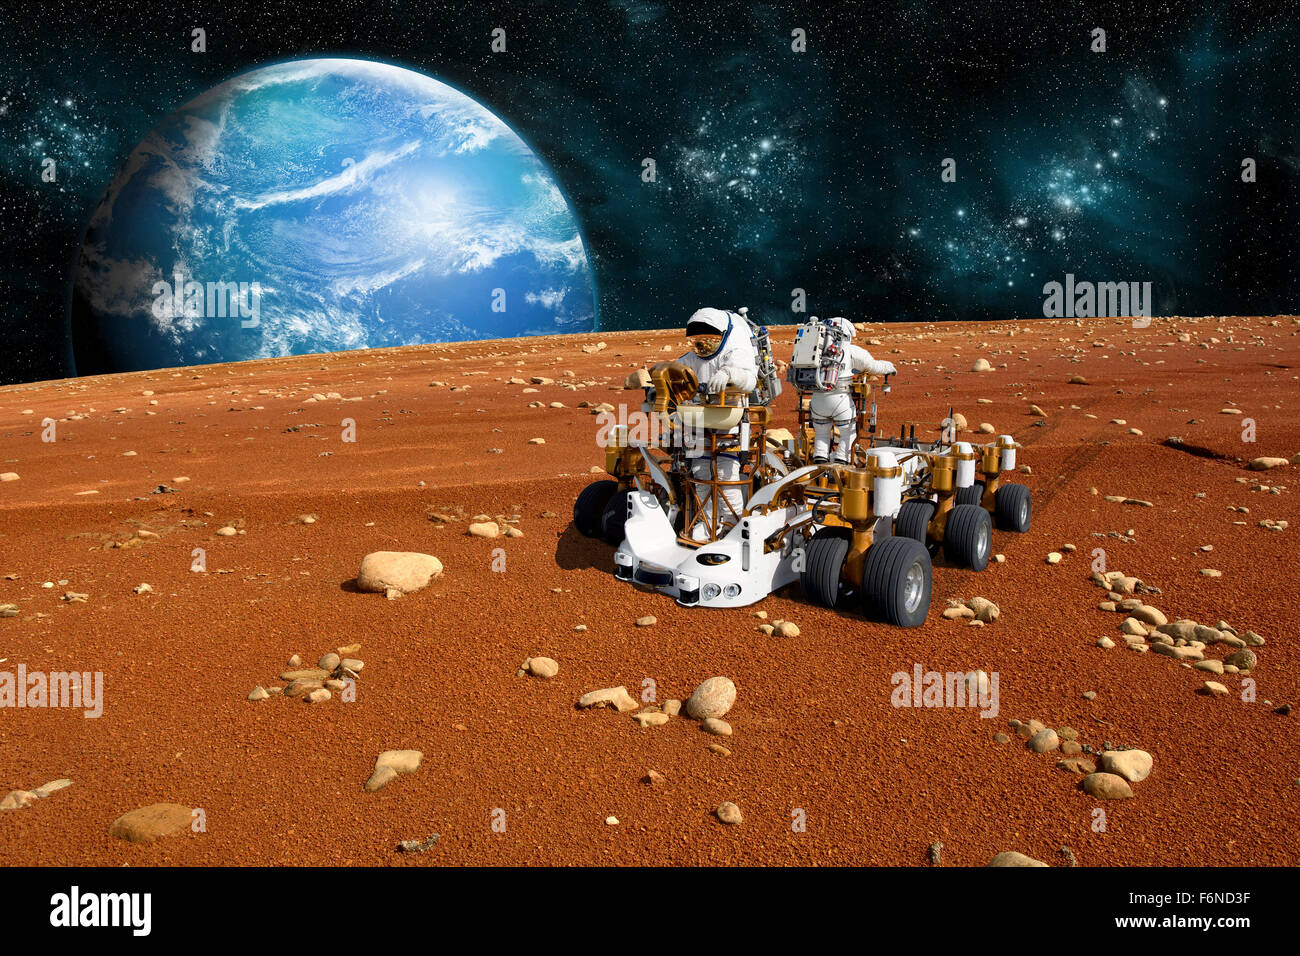 Un team di astronauti esplorare una sterile luna su un rover. La luna in acqua coperte di pianeta madre sorge oltre l'orizzonte. Foto Stock